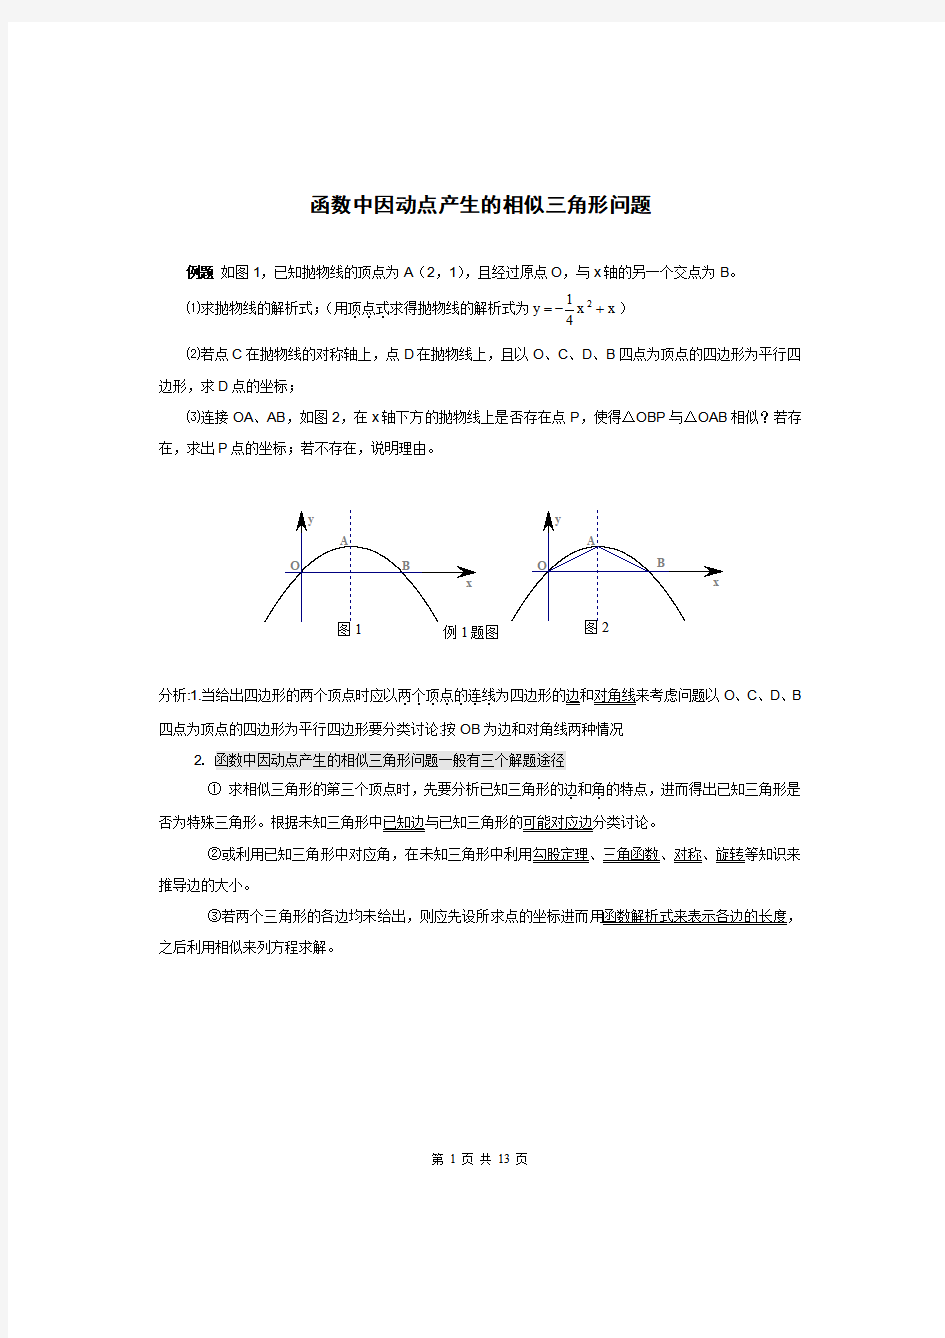 相似三角形动点考点分析,动点产生的相似三角形方法总结